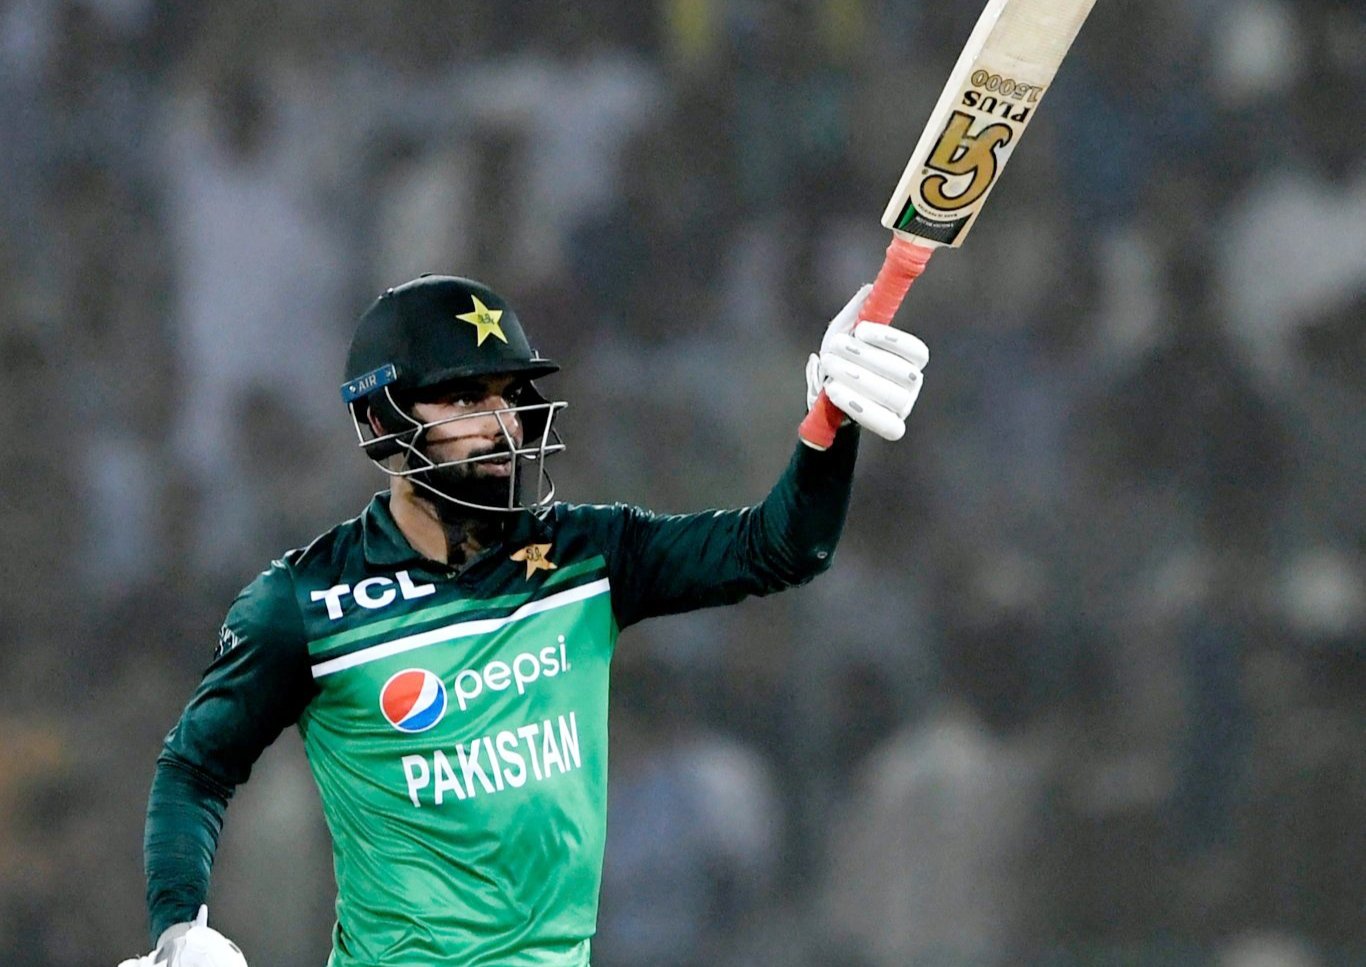 Ready to bat at any position, says Shadab Khan